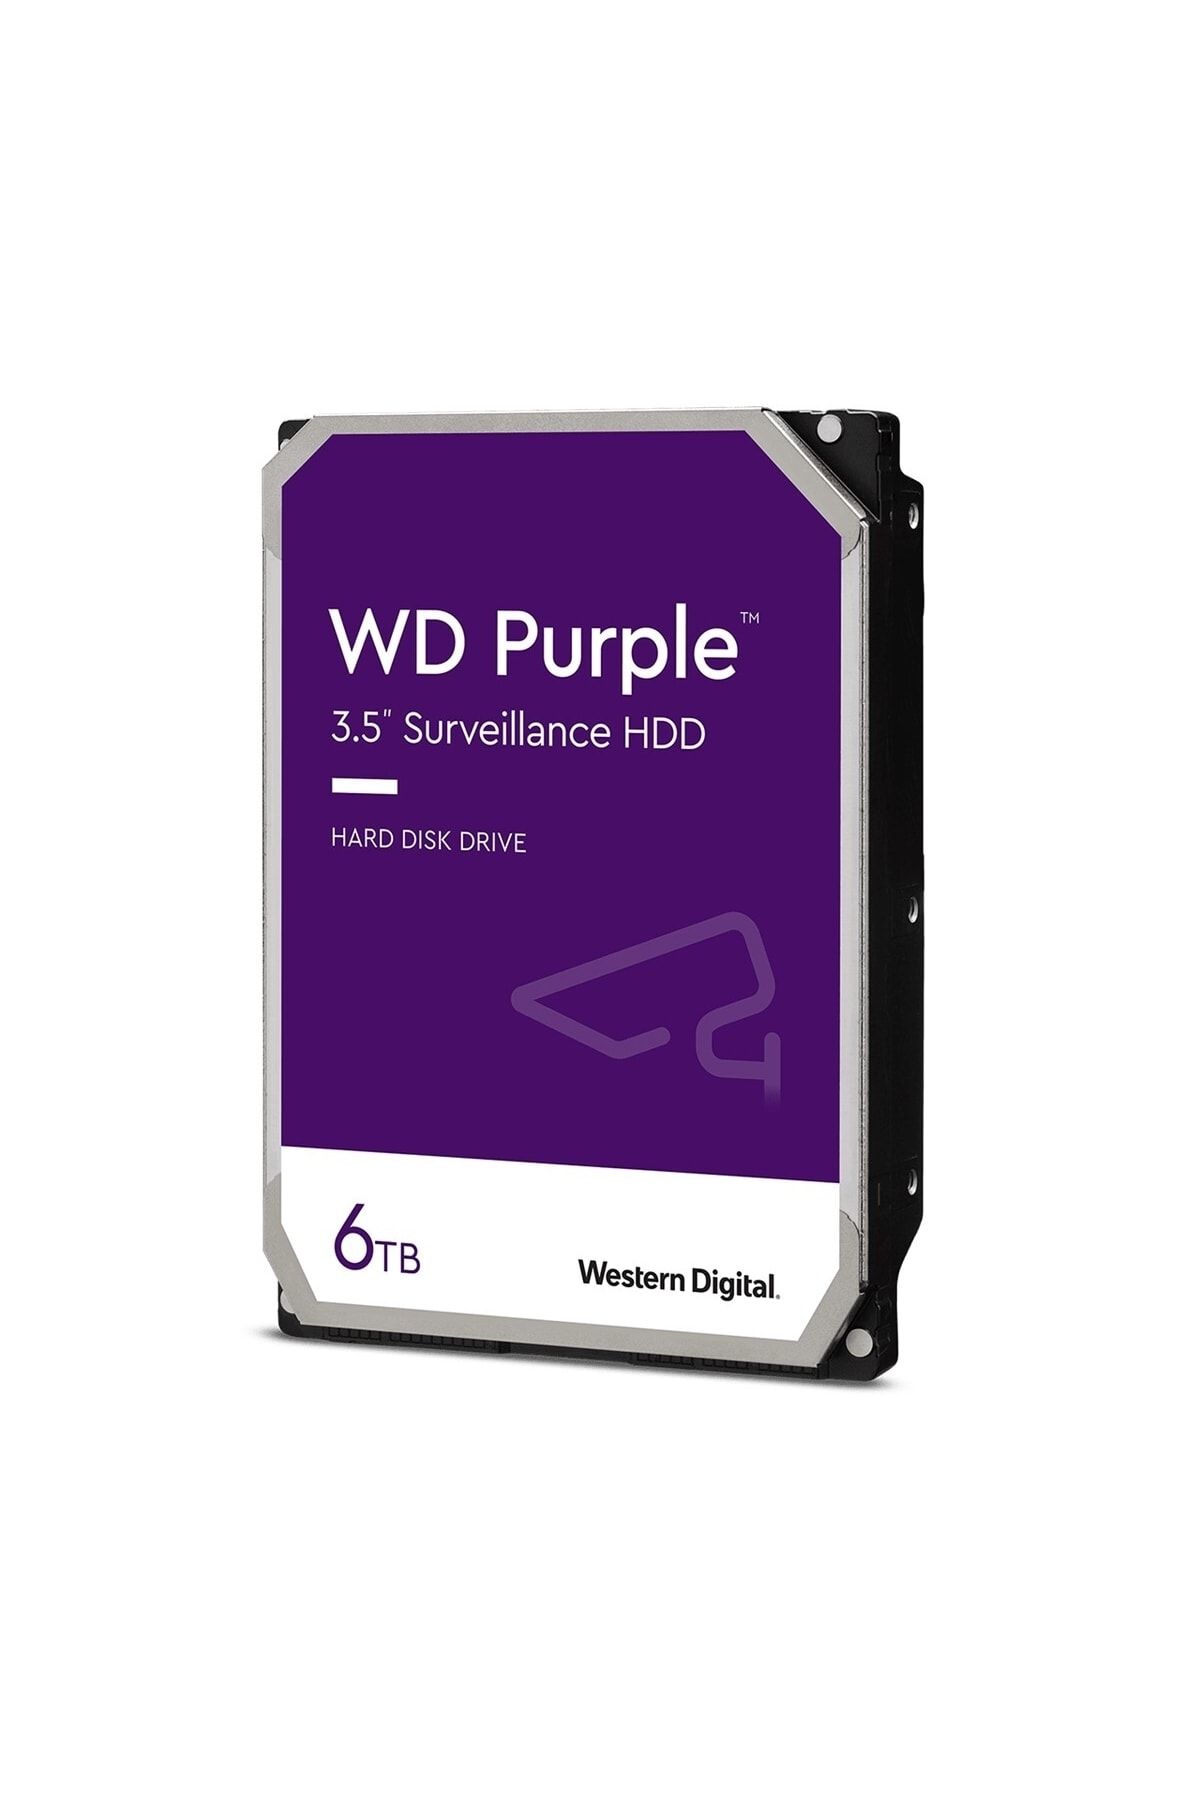 W.Digital Wd Purple 3.5" 6tb 64mb 5400rpm Wd62purz Surveillance, Sata 3, 7/24, Raıd, Güvenlik Hard Disk